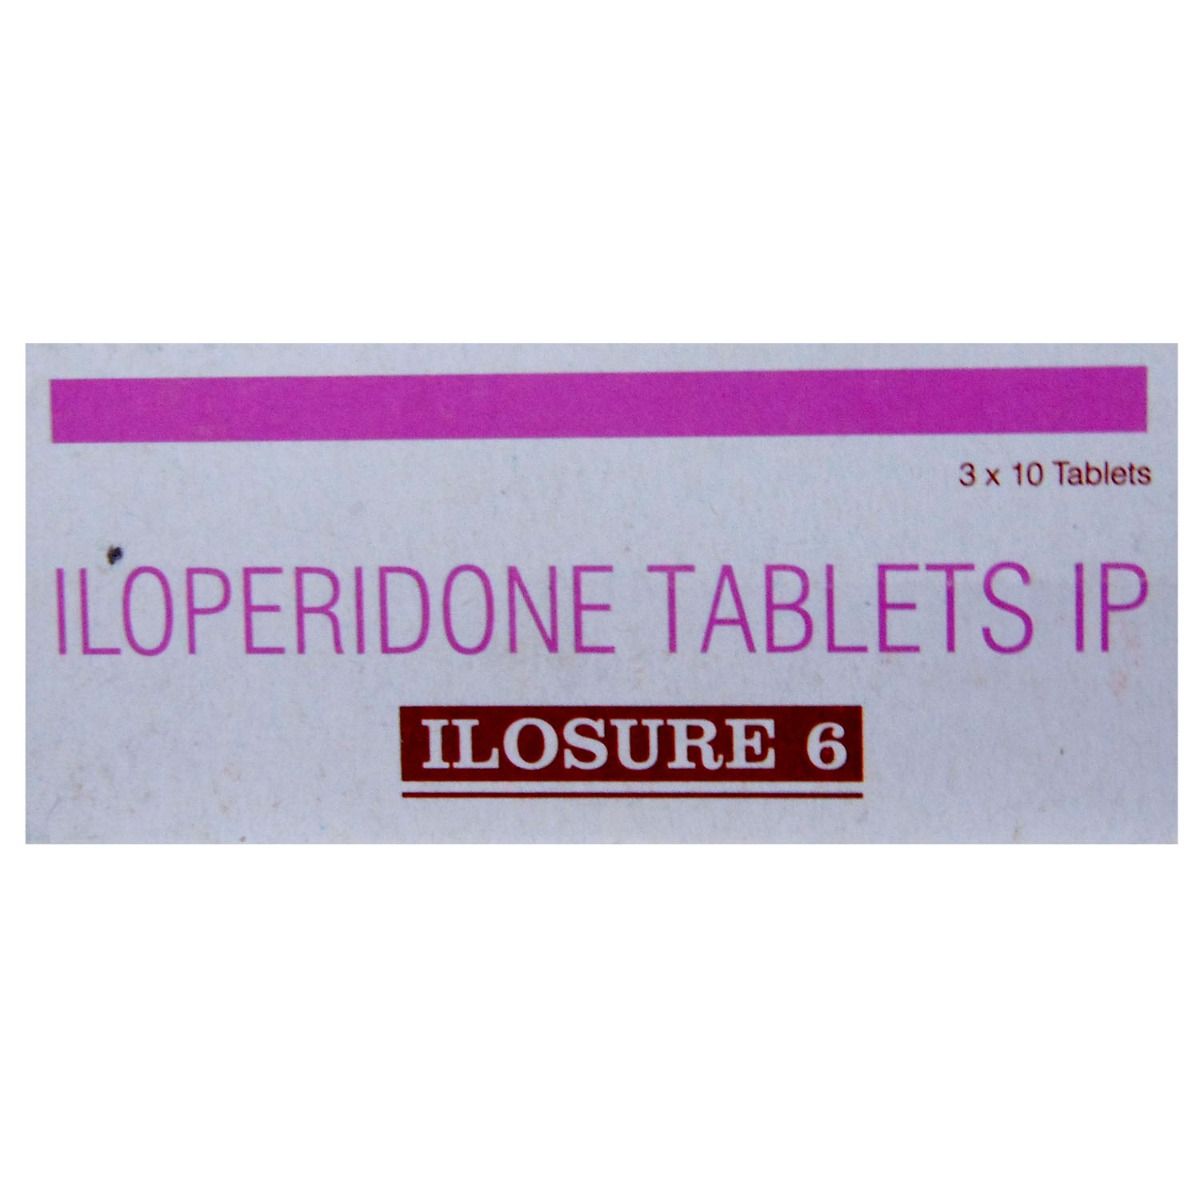 Buy Ilosure 6 Tablet 10's Online